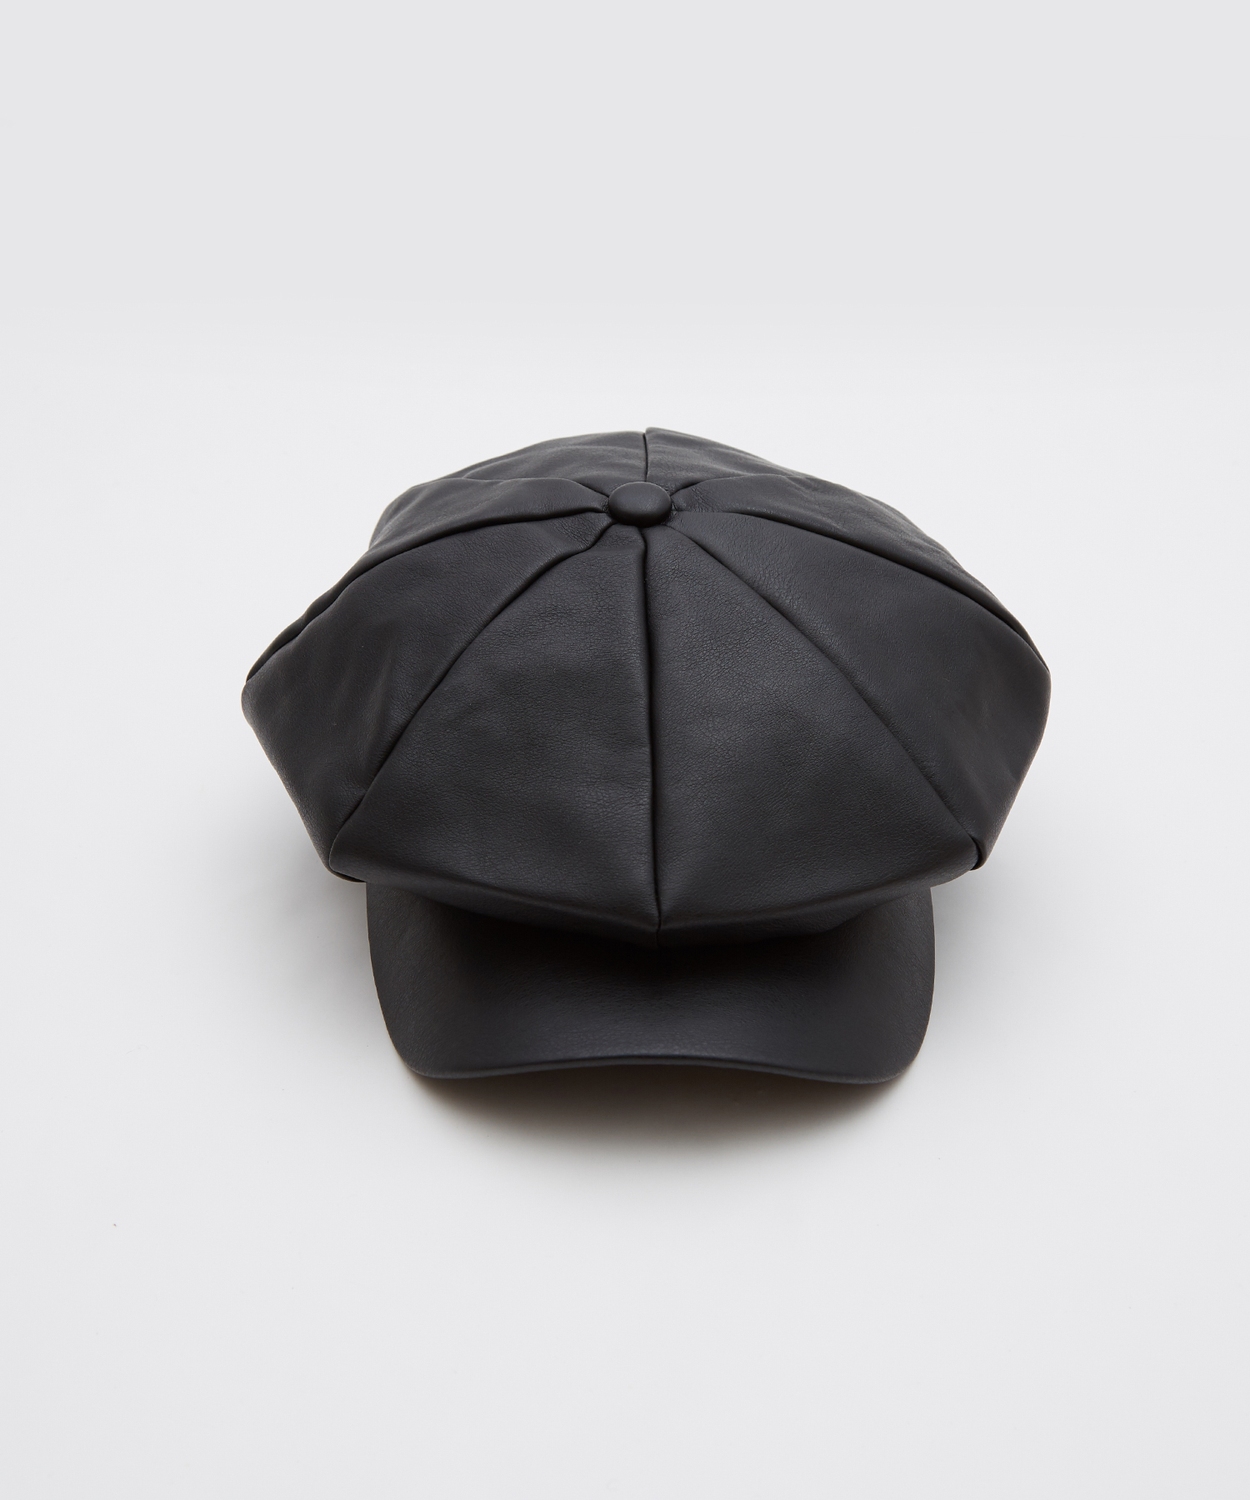 ニューヨークハット NEW YORK HAT ハンチング ブラック ウール - 帽子